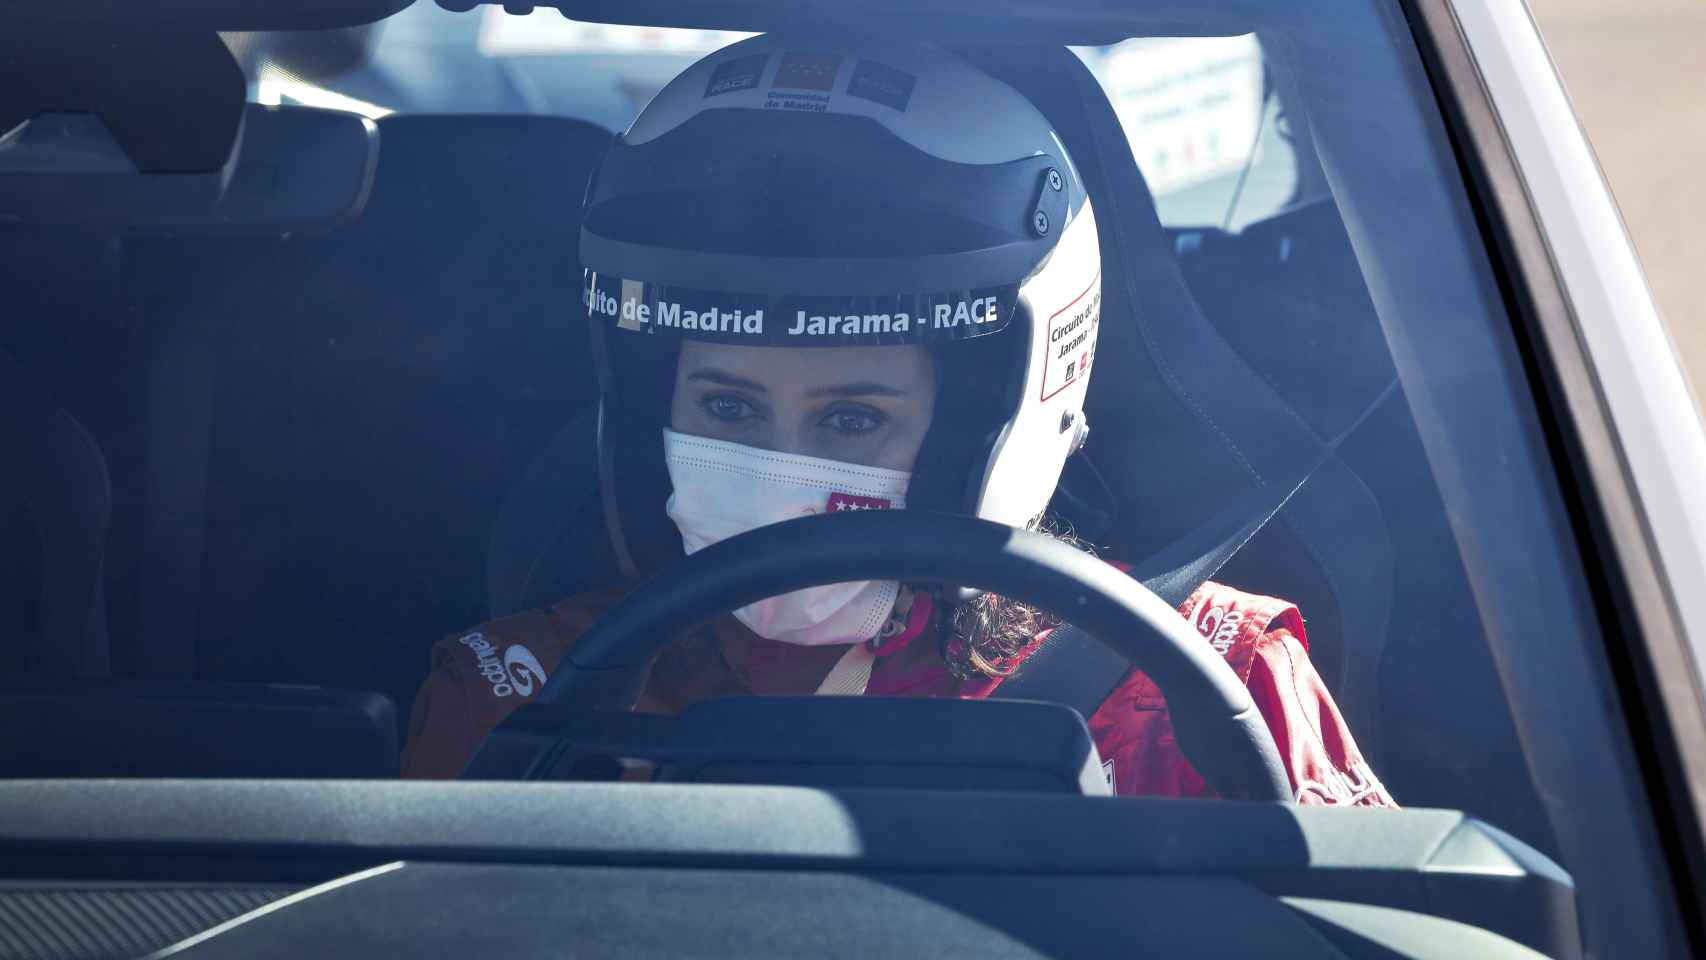 La presidenta de la Comunidad de Madrid se anima a pilotar en la inauguración del circuito Madrid Jarama RACE.